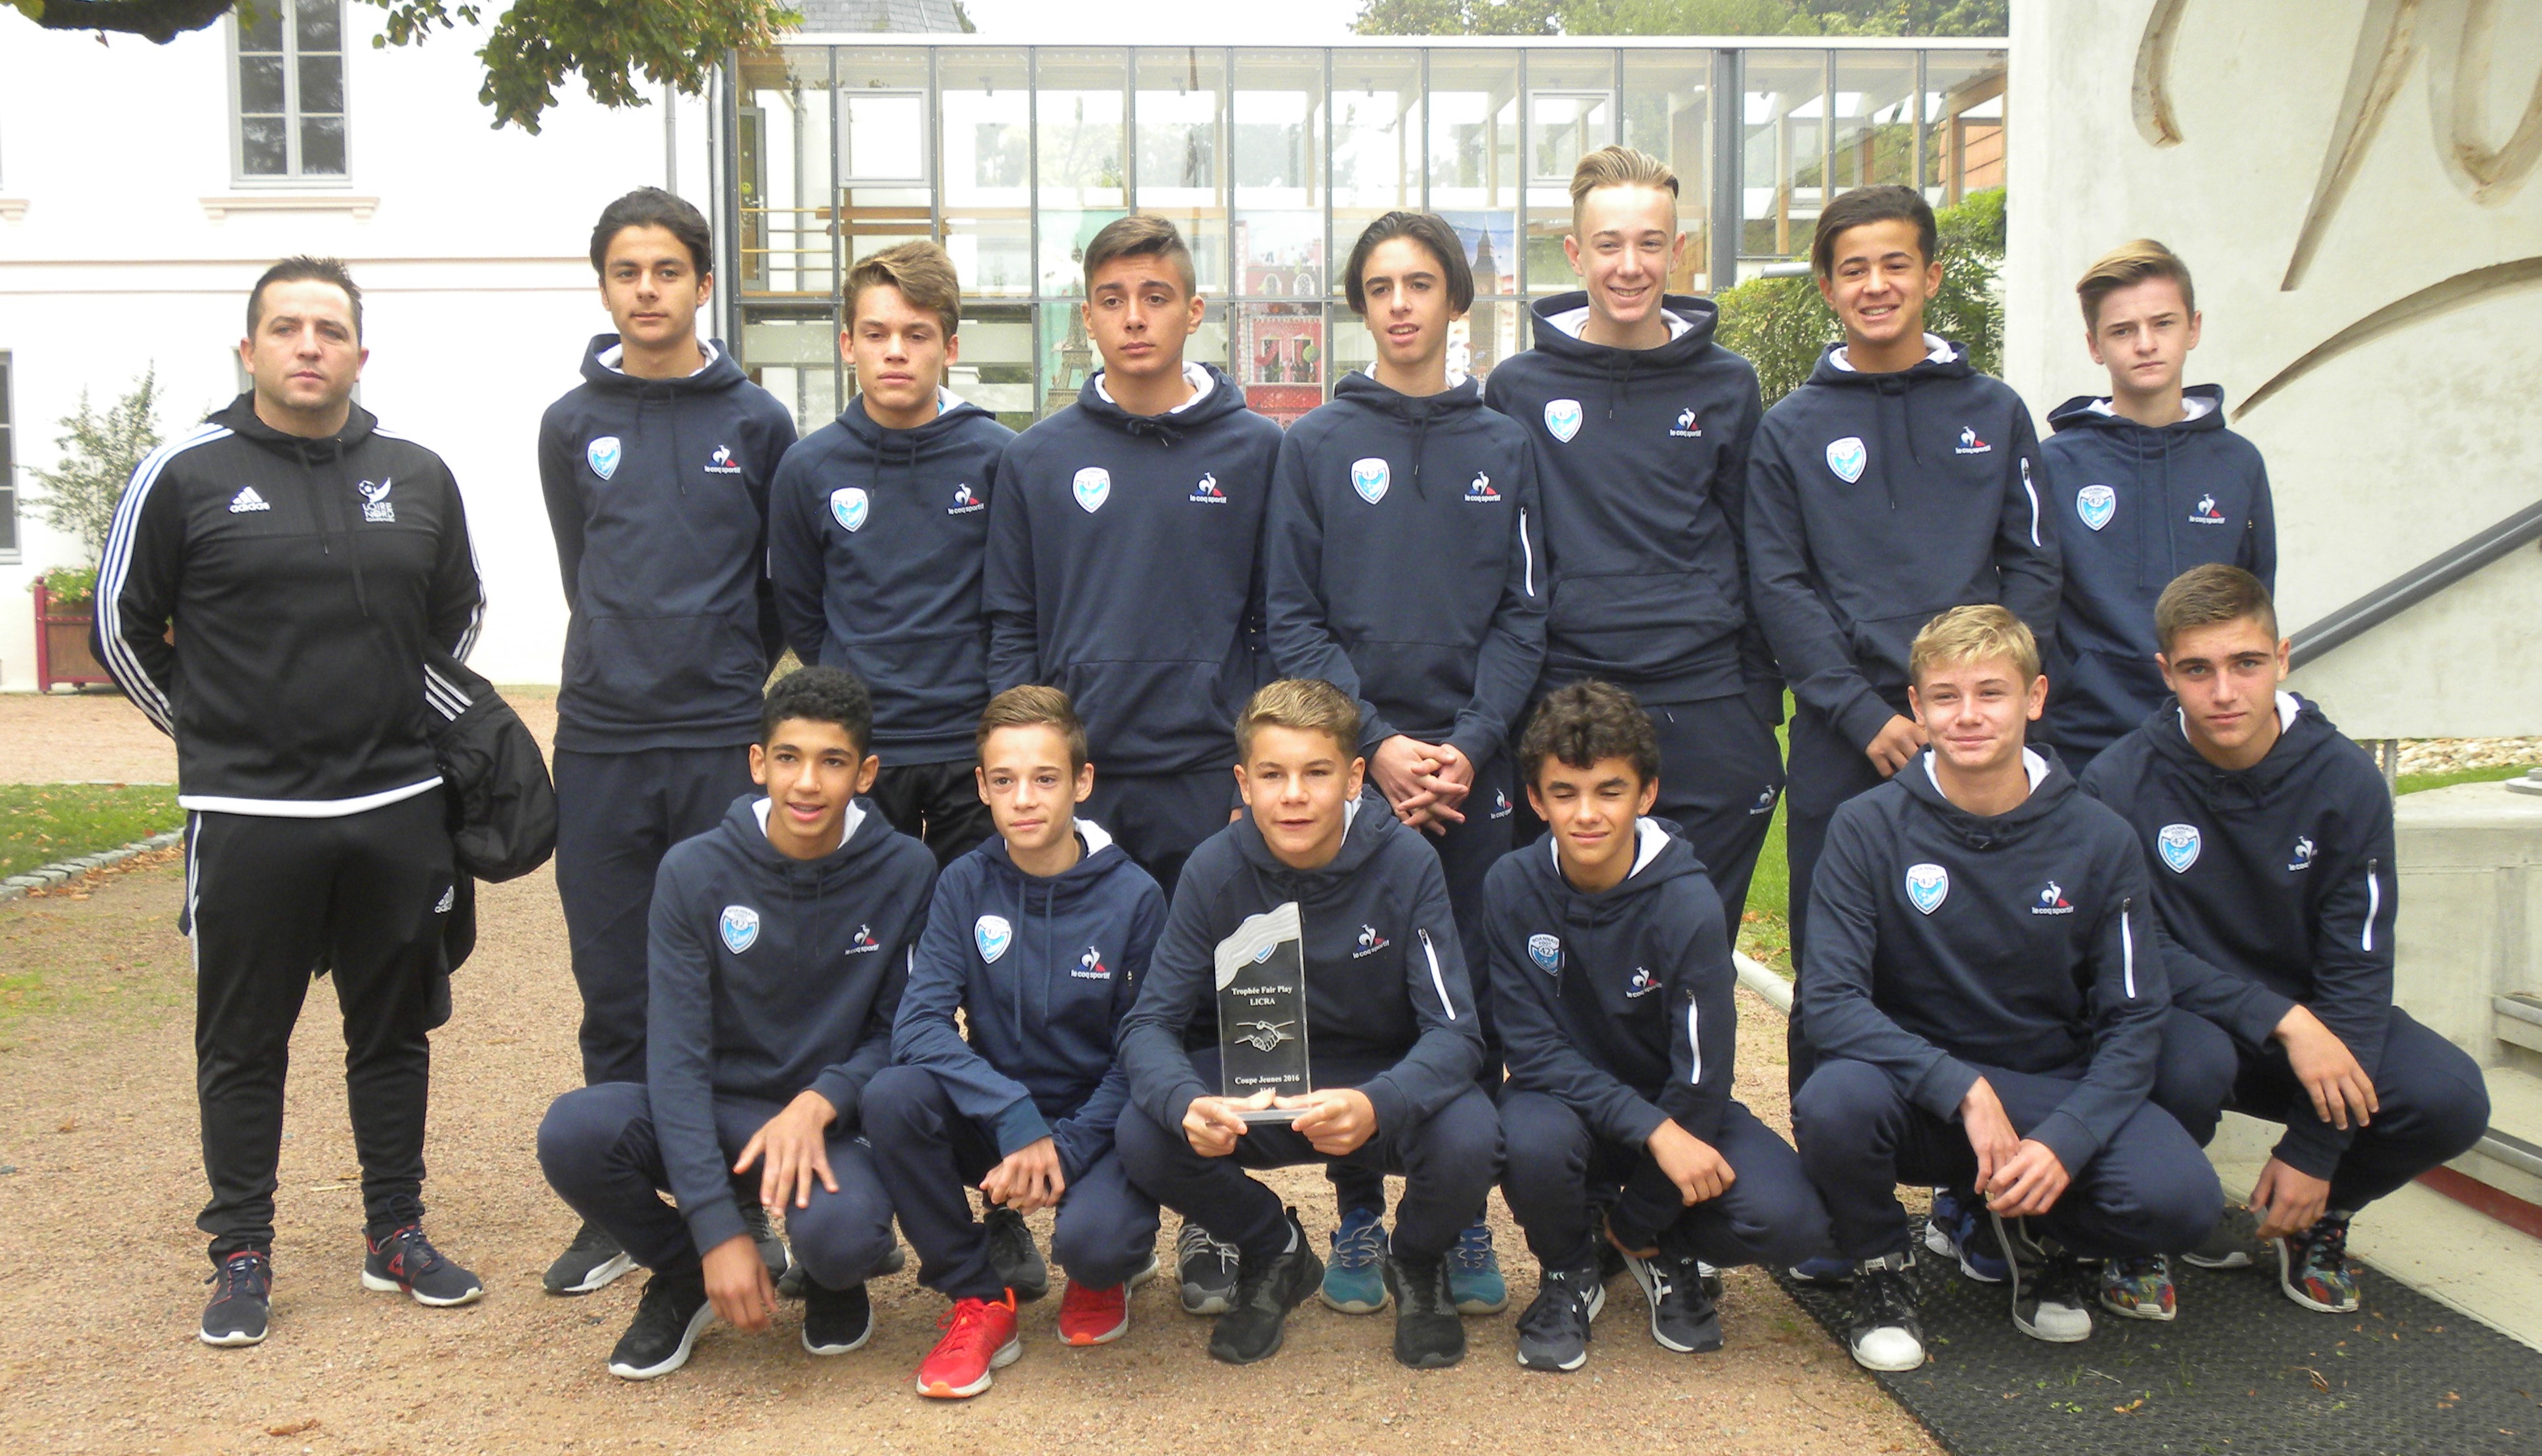 Récompense : les U15 remportent le Trophée du fair play, décerné par la Licra